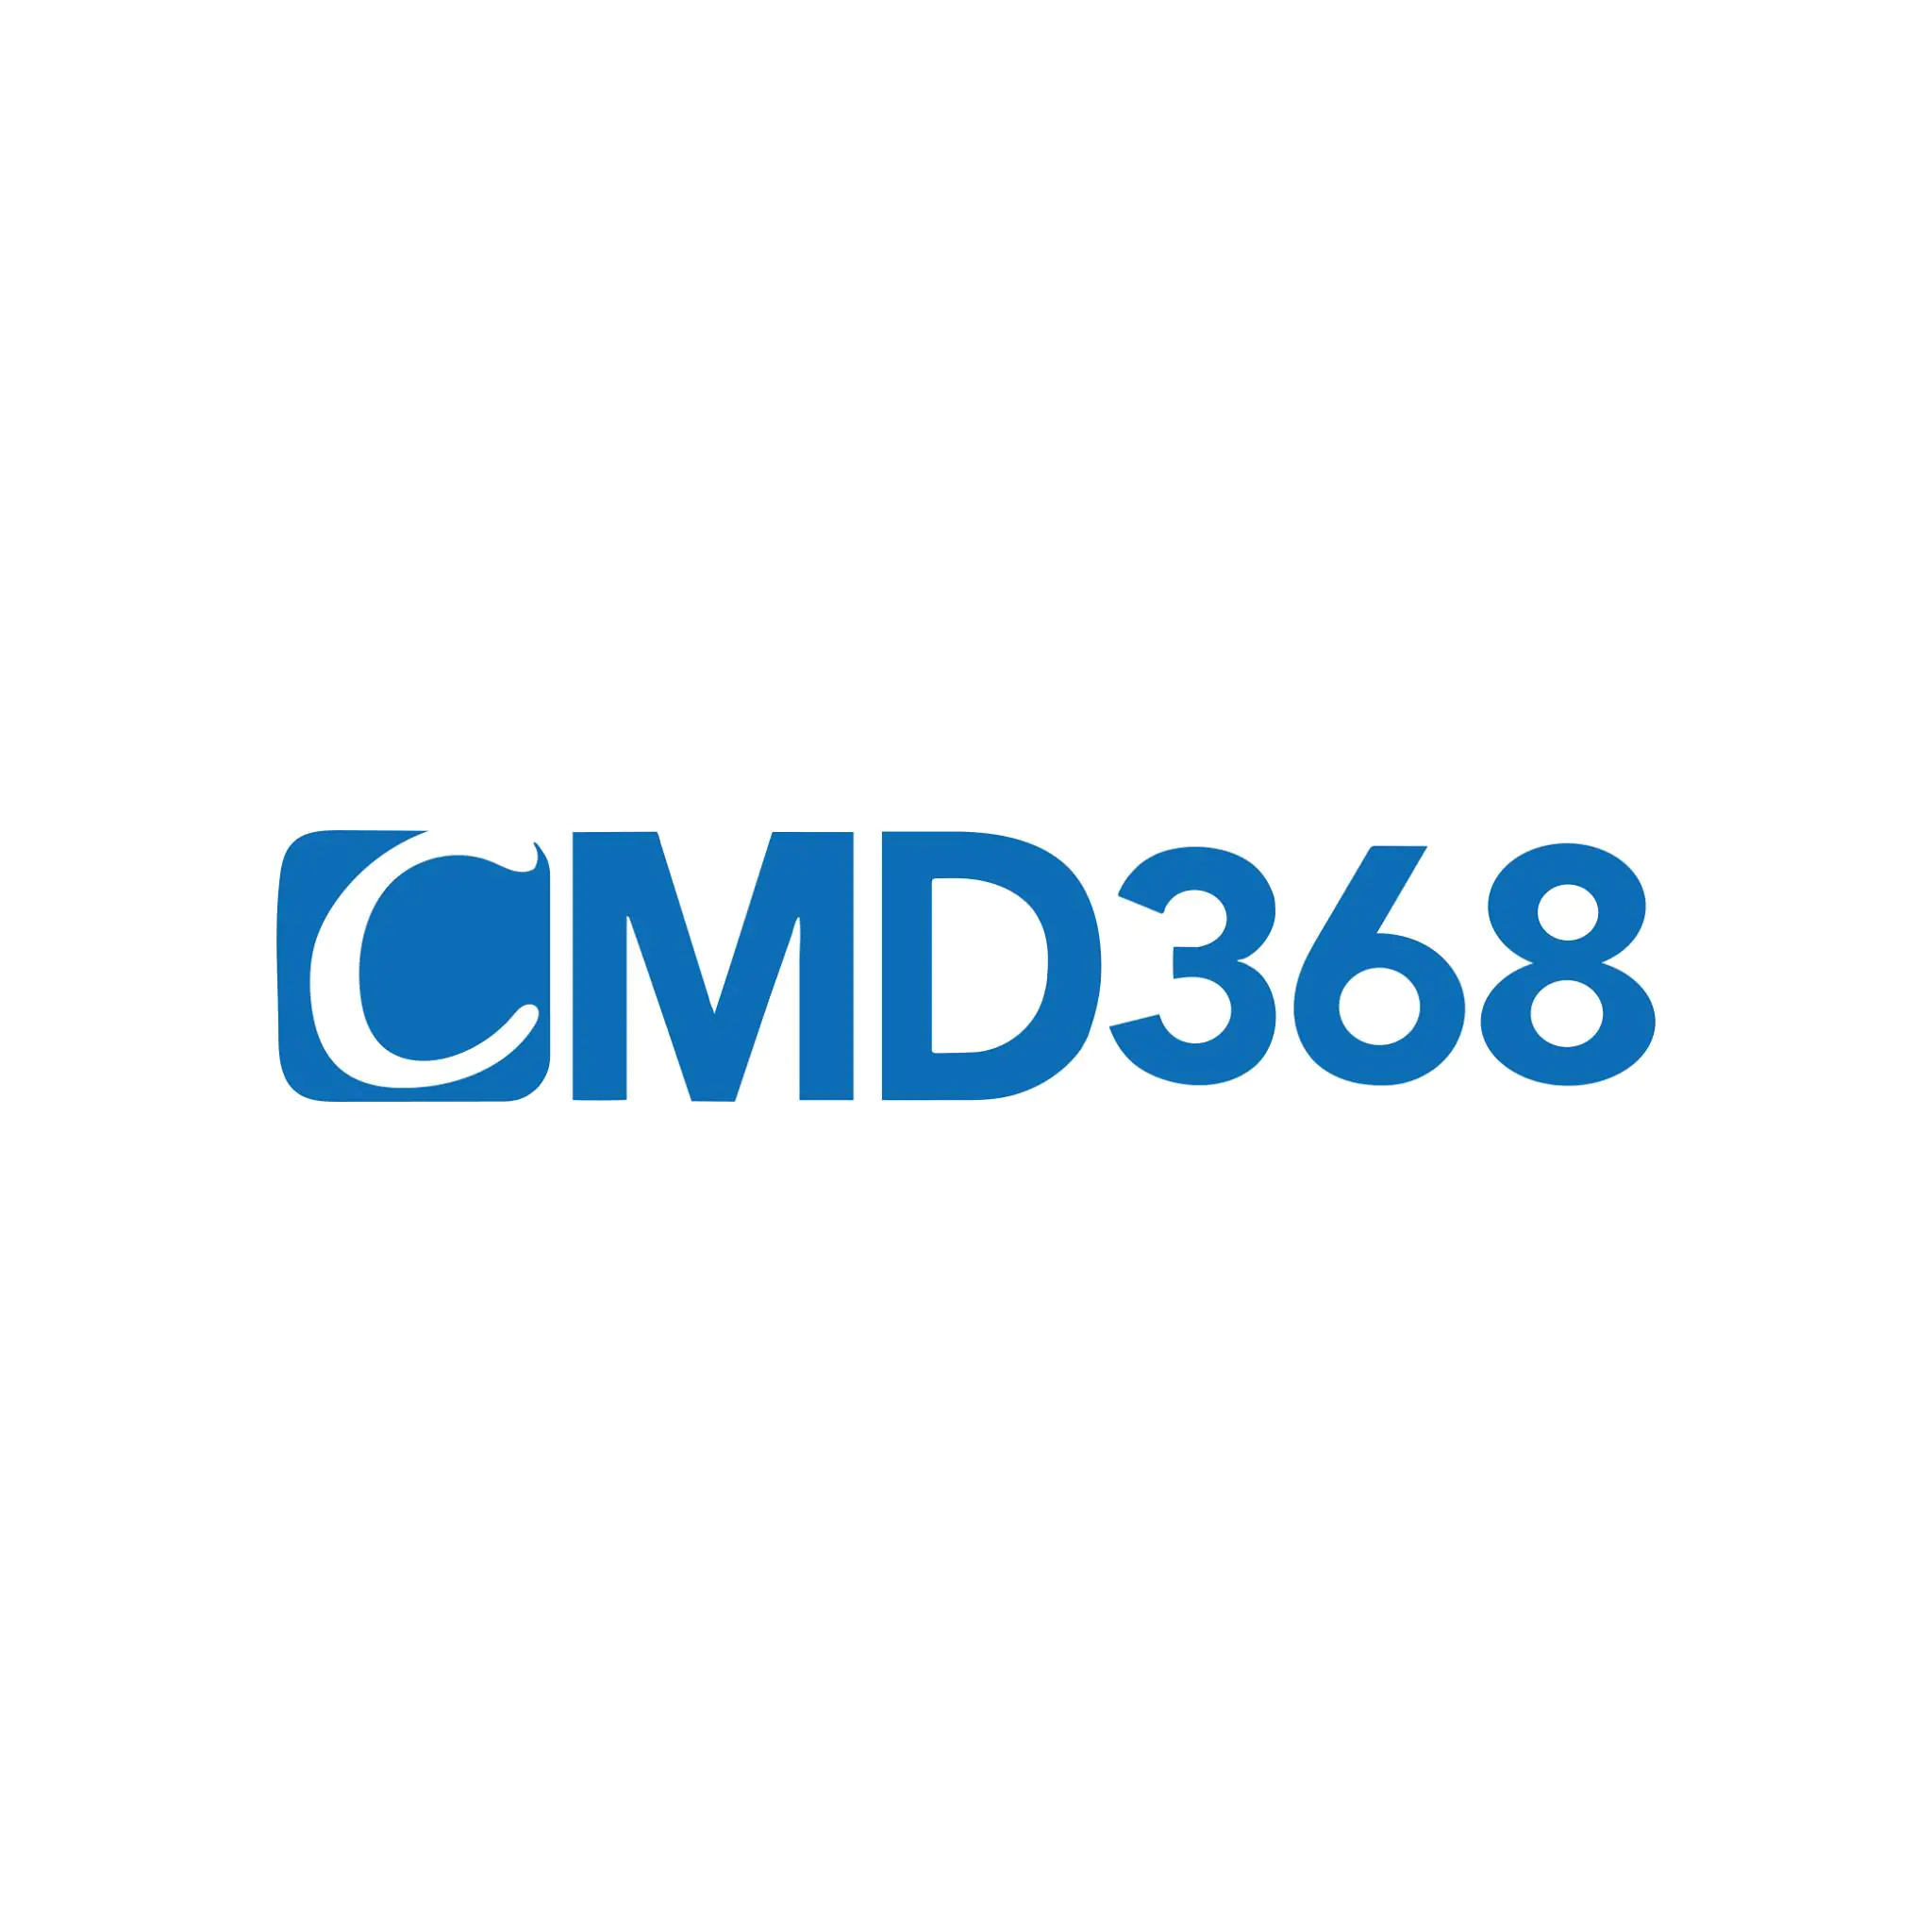 CMD368 – Sân chơi cá cược thể thao đỉnh cao 2021